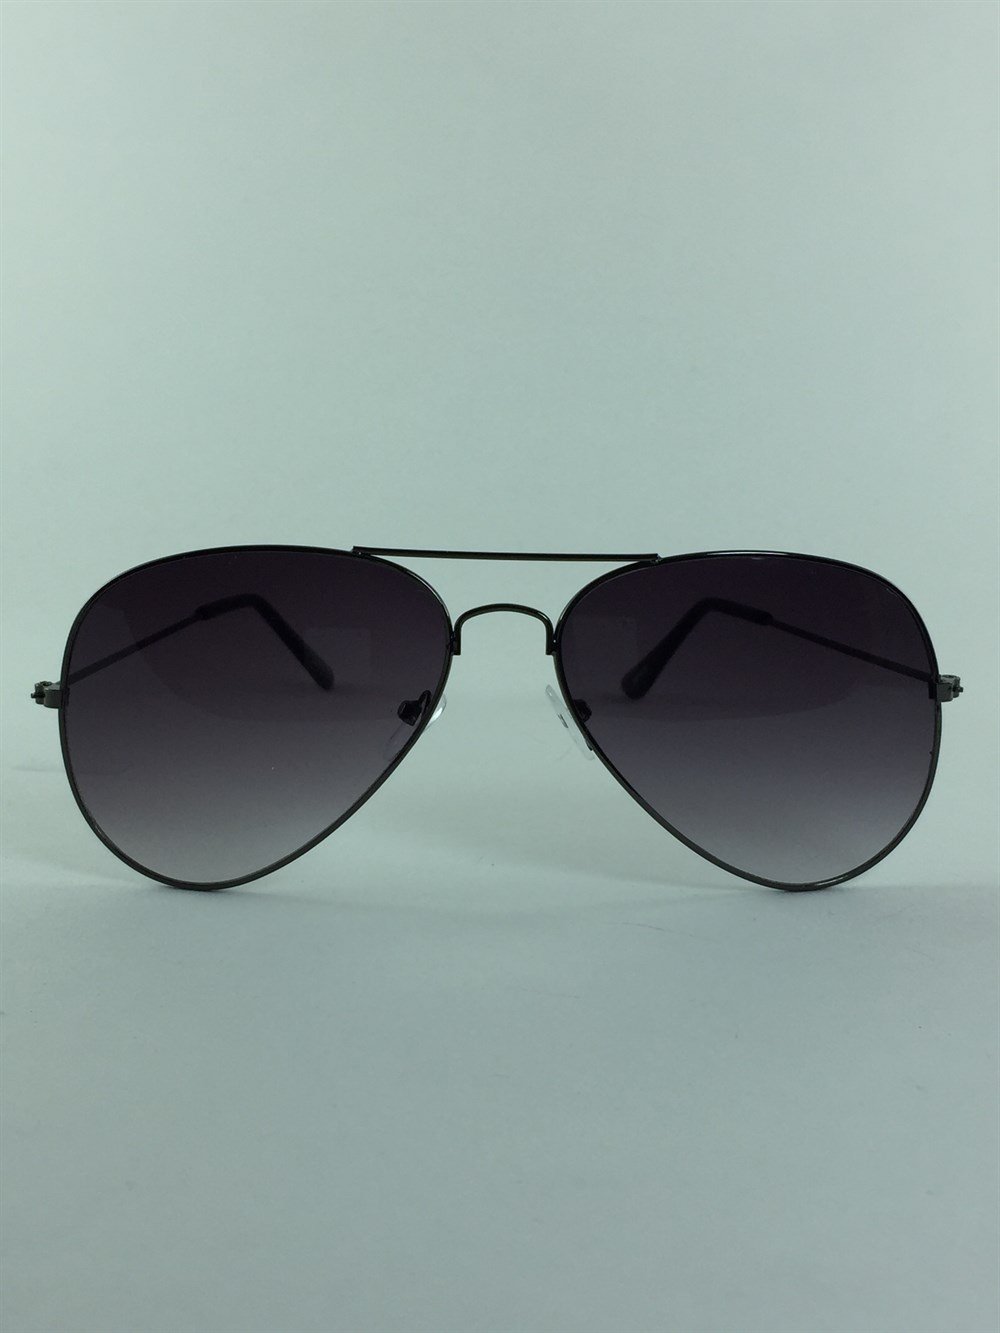 Yeni Damla Model Siyah Gözlük